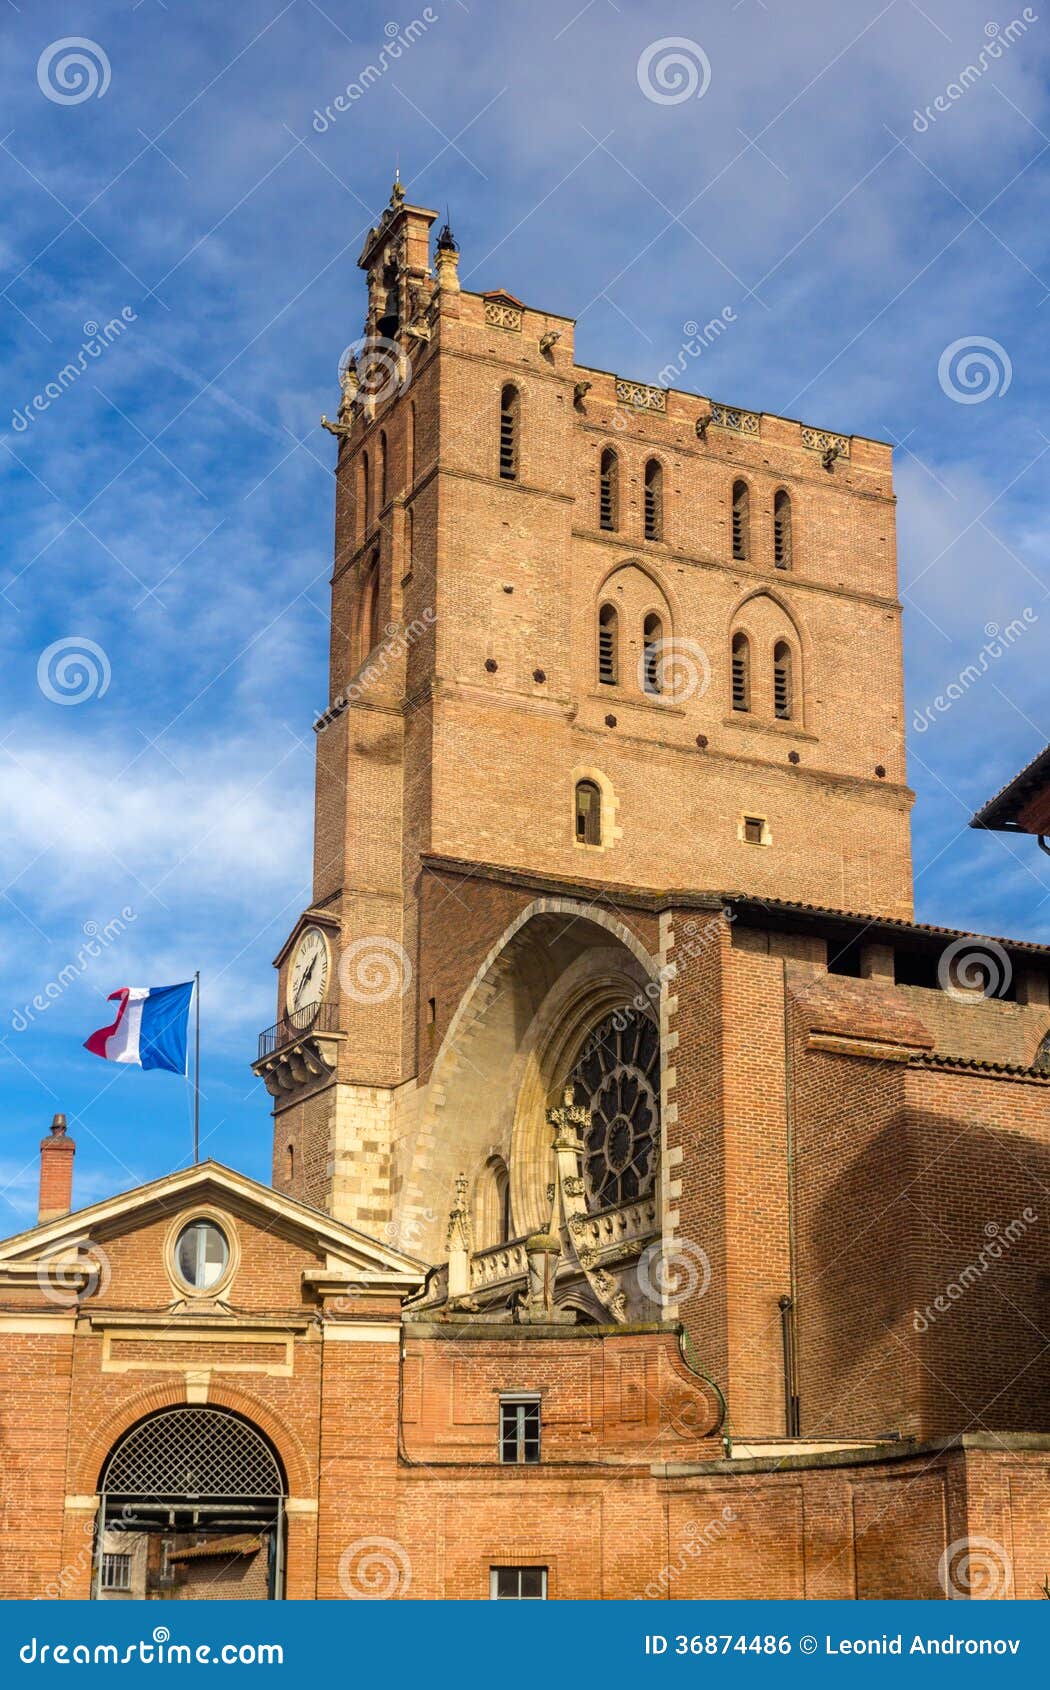 【携程攻略】图卢兹圣塞尔南大教堂景点,图卢兹非常值得去的大教堂，里面有很多遗迹！非常壮观！就是不知道怎…